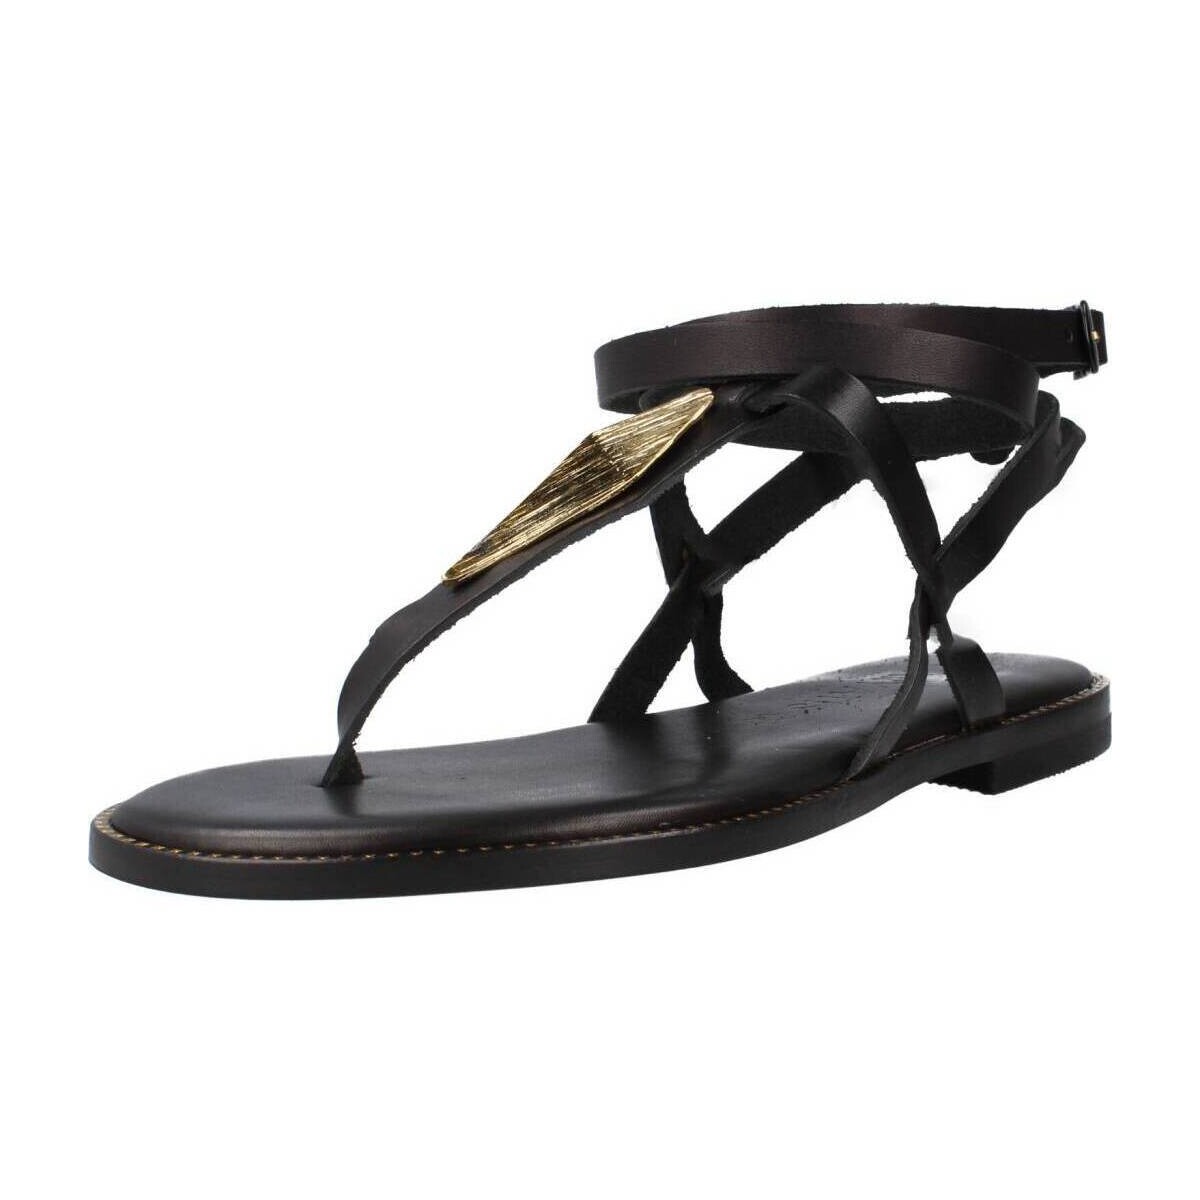 Παπούτσια Γυναίκα Σανδάλια / Πέδιλα Caryatis 6429C Black